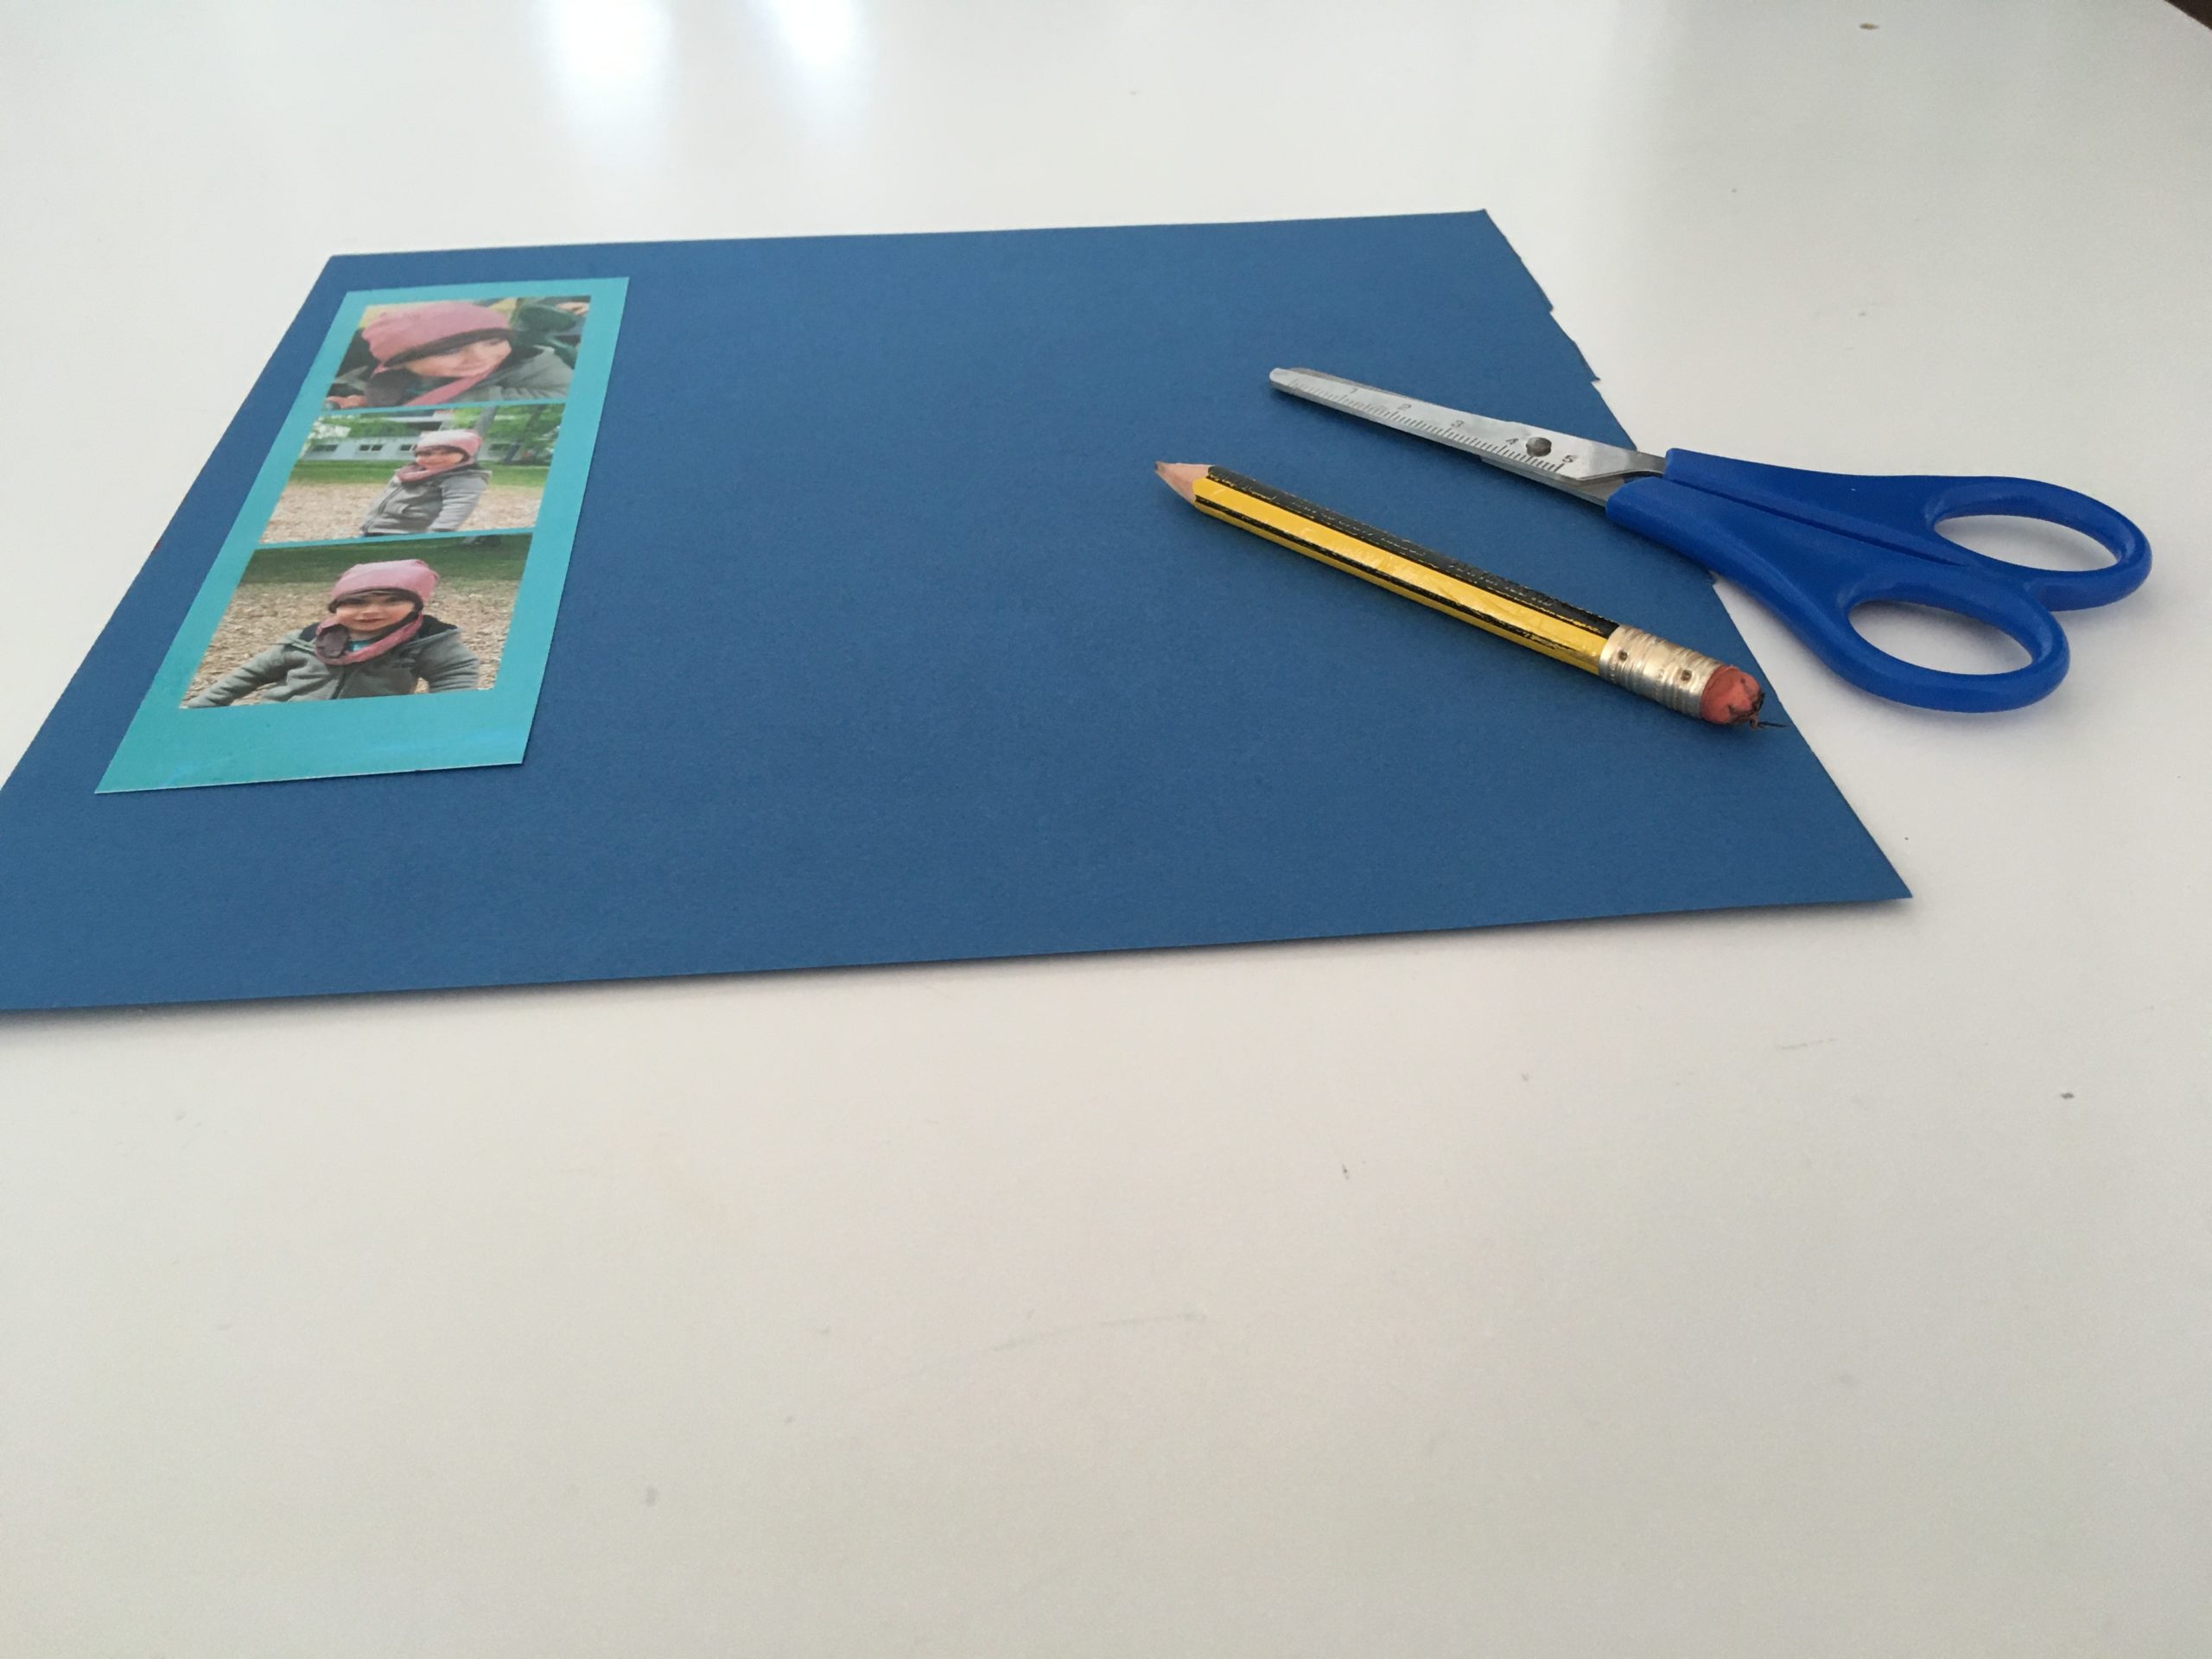 Bild zum Schritt 2 für das Bastel- und DIY-Abenteuer für Kinder: 'Bildstreifen auf das Tonpapier legen und mit etwas Rand das...'